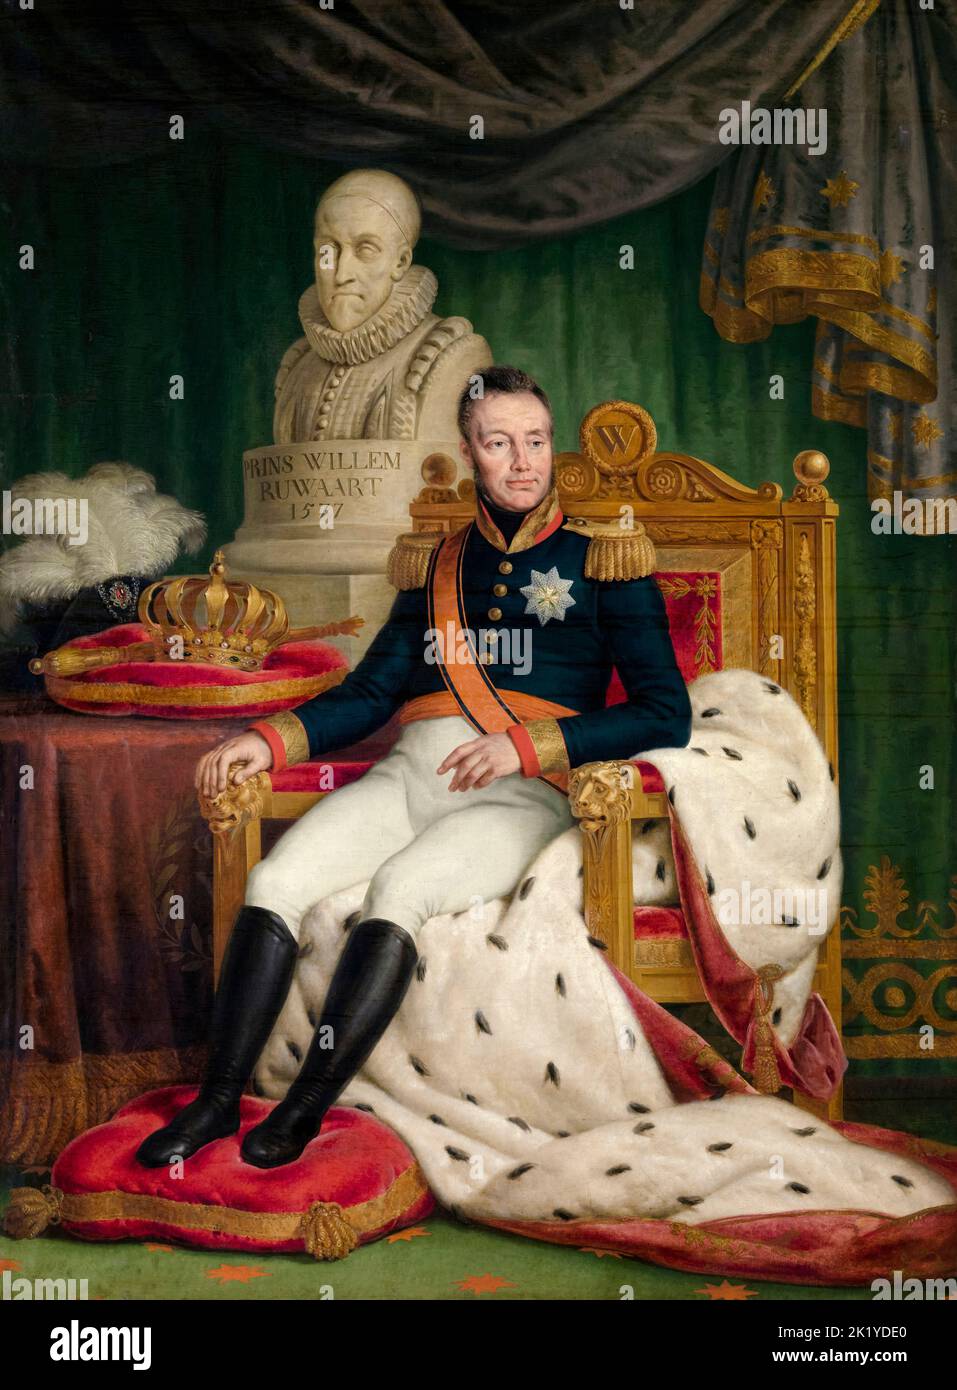 Guillermo I de los Países Bajos, (1772-1843), retrato al óleo sobre lienzo de Mattheus Ignatius van Bree, antes de 1839 Foto de stock